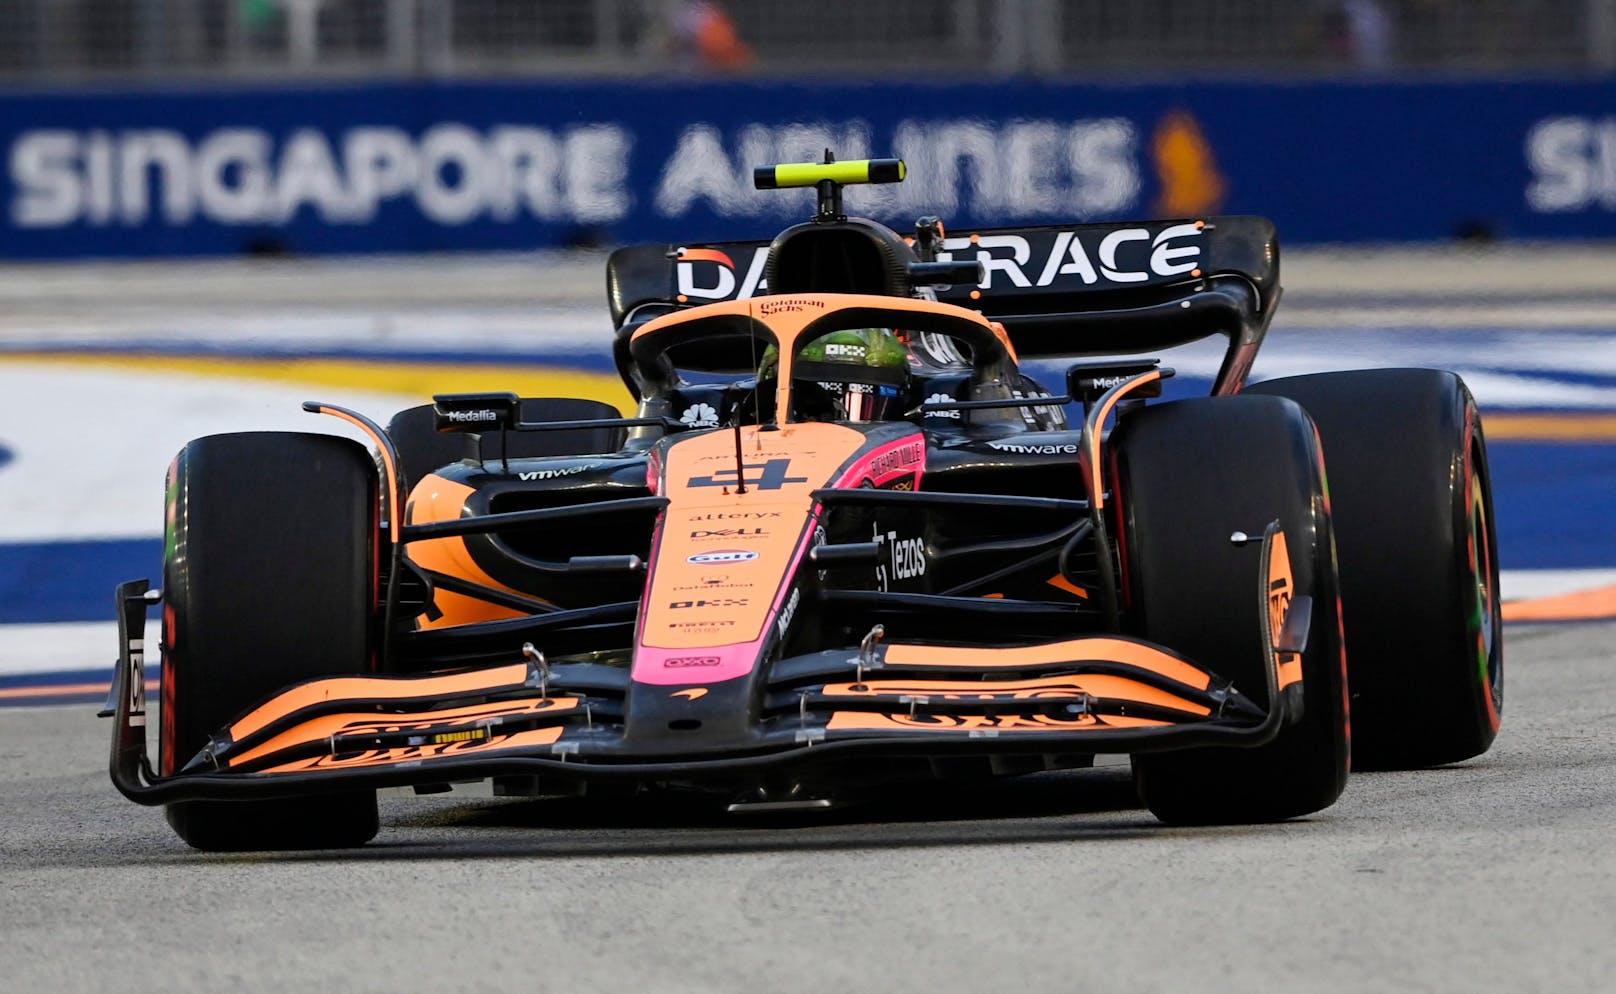 4. Lando Norris (McLaren) - Note: 1. Ganz tolle Vorstellung von Lando, der auch Verstappen rundenlang hinter sich halten konnte, und mit Rang 4 vor dem Stallgefährten wichtige Punkte fürs Team holen konnte